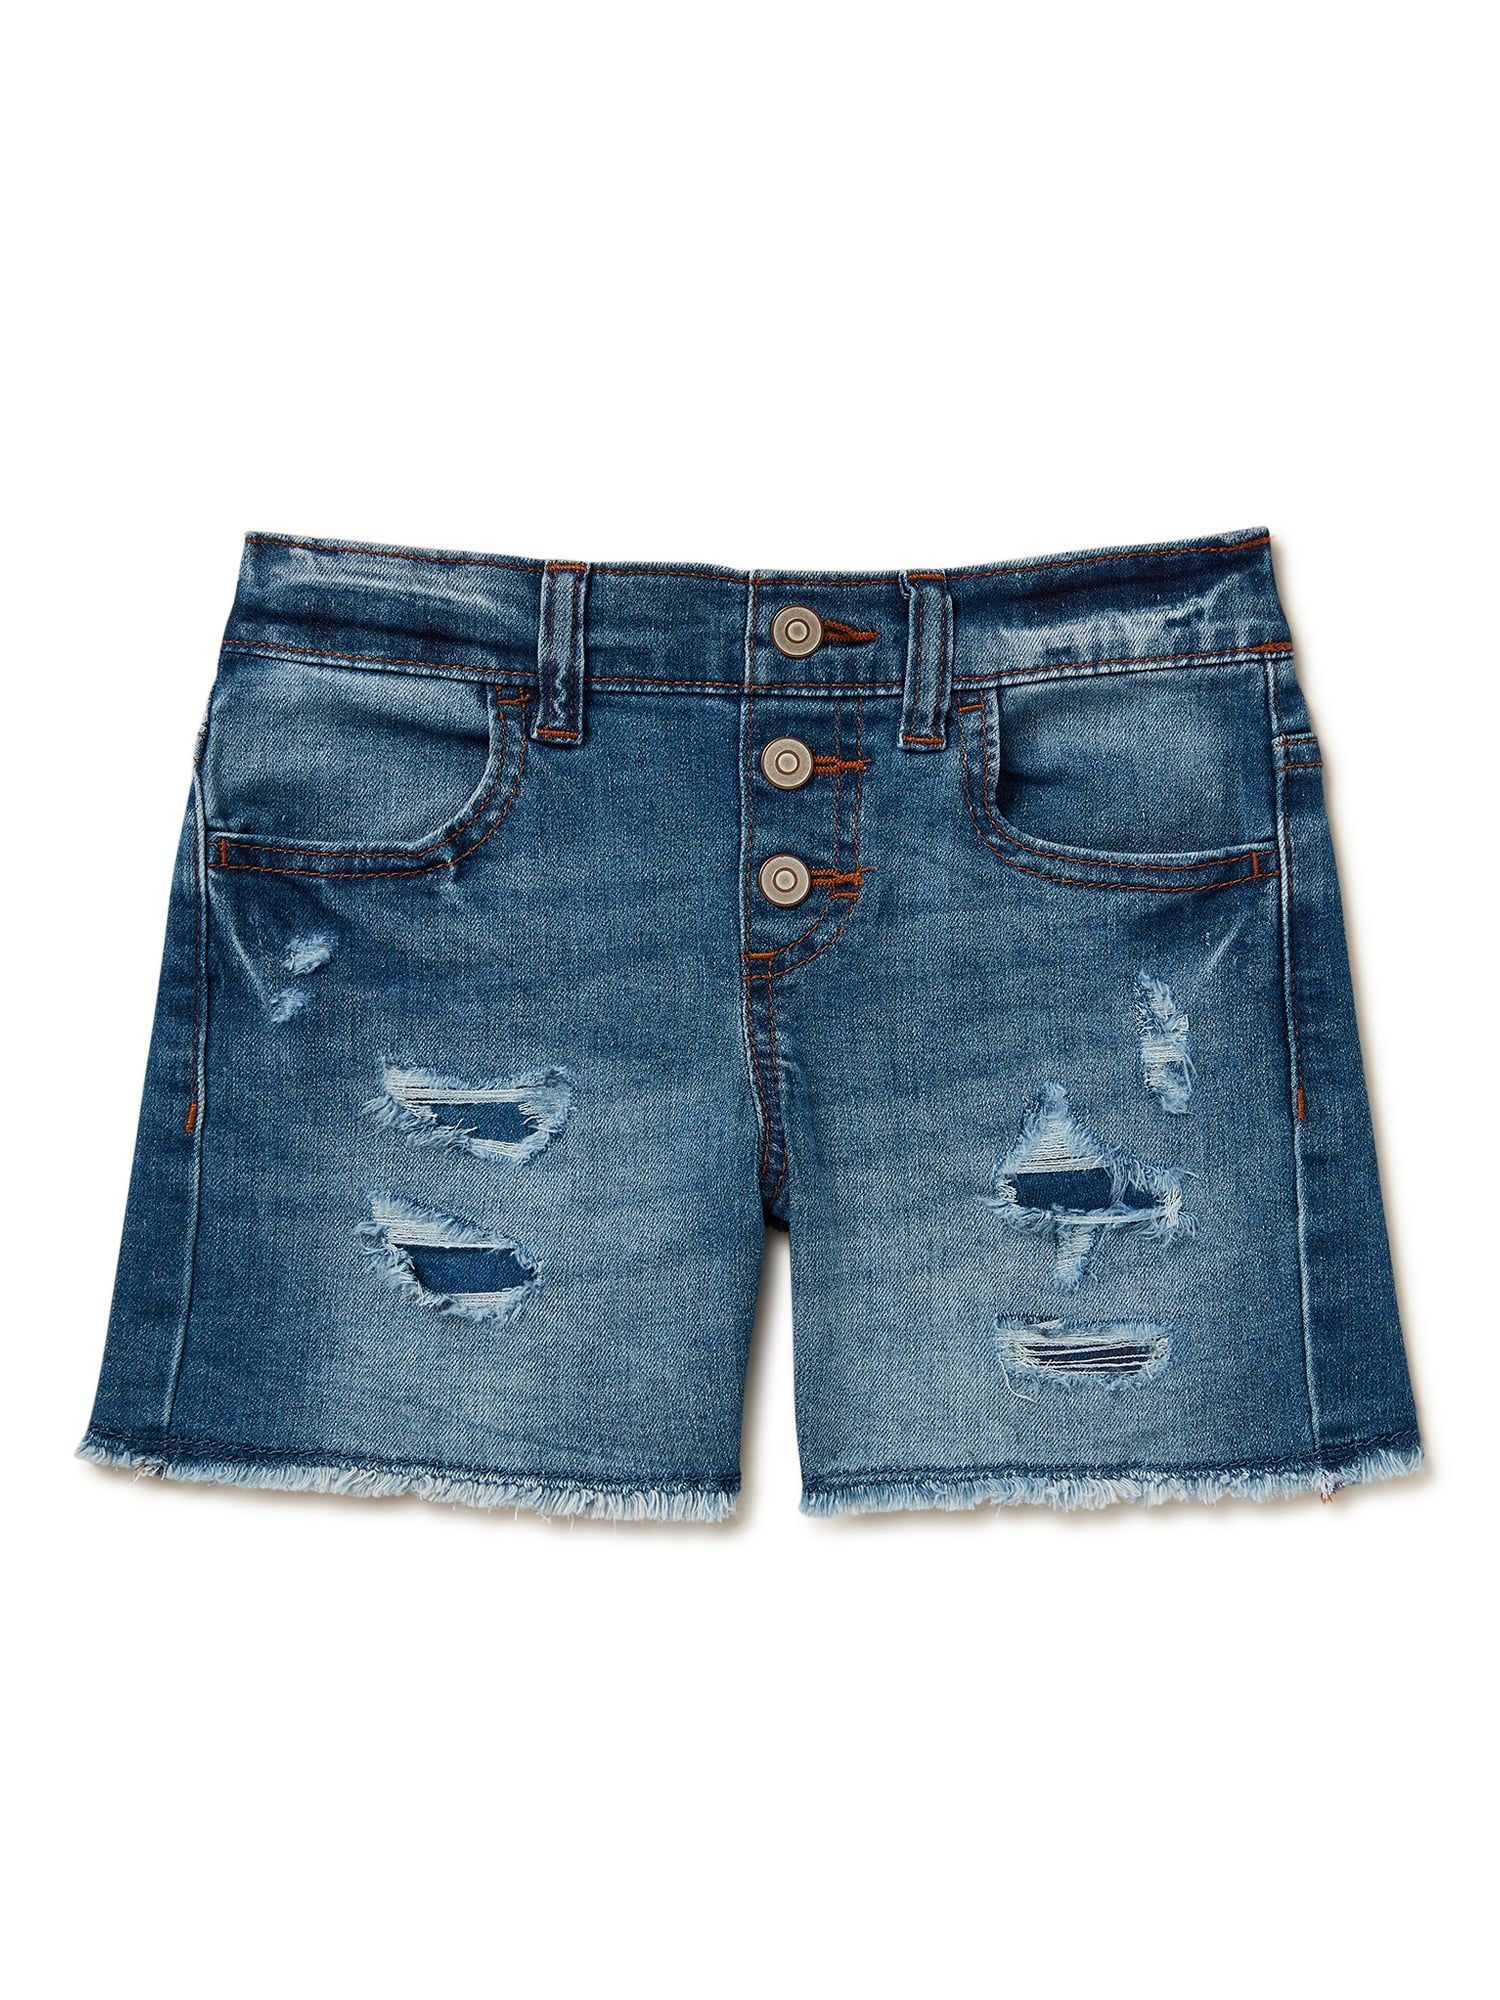 Wonder Nation Girls Button Fly Denim Shorts, Sizes 4-18 & Plus | Walmart (US)